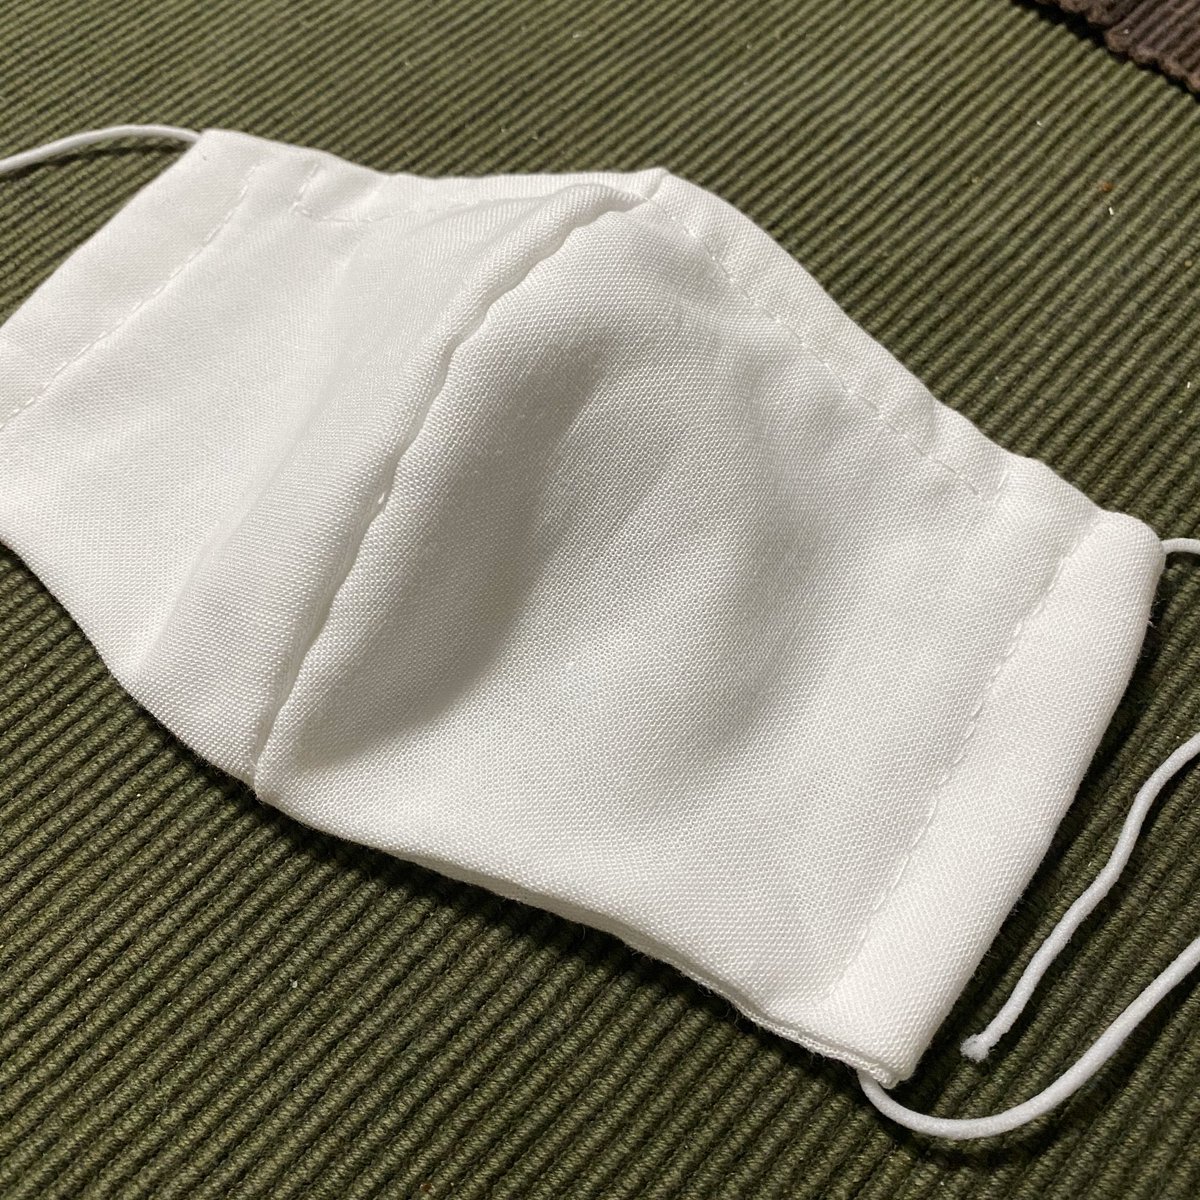 さらし 作り方 マスク の さらし布巾の超簡単な作り方。５つの使い道、洗濯方法を知ろう。